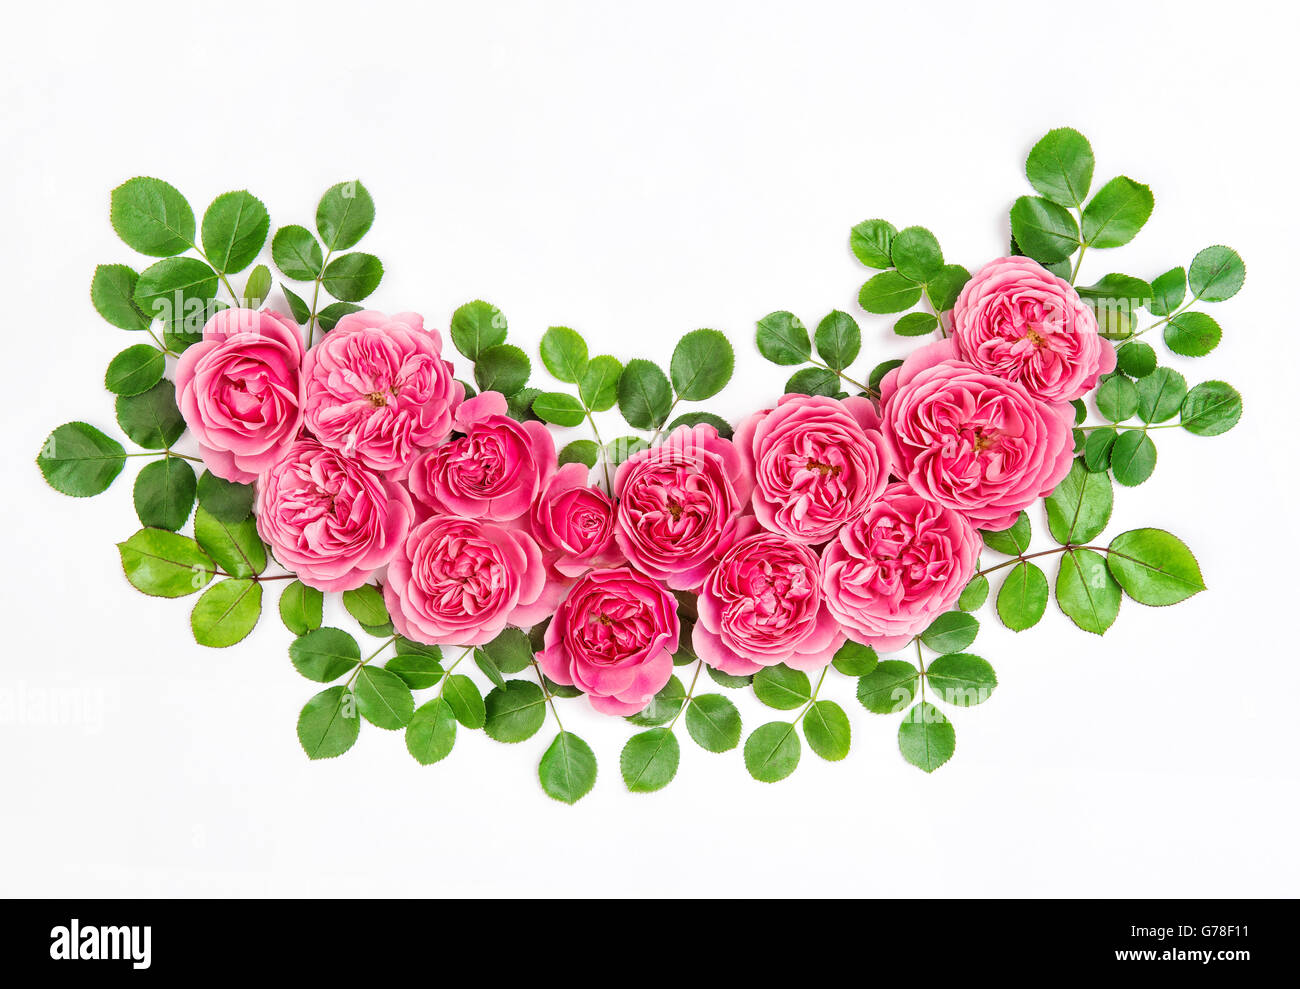 Rosa Rosen mit grünen Blättern, die isoliert auf weißem Hintergrund. Schöne rosa Blüten bouquet Stockfoto